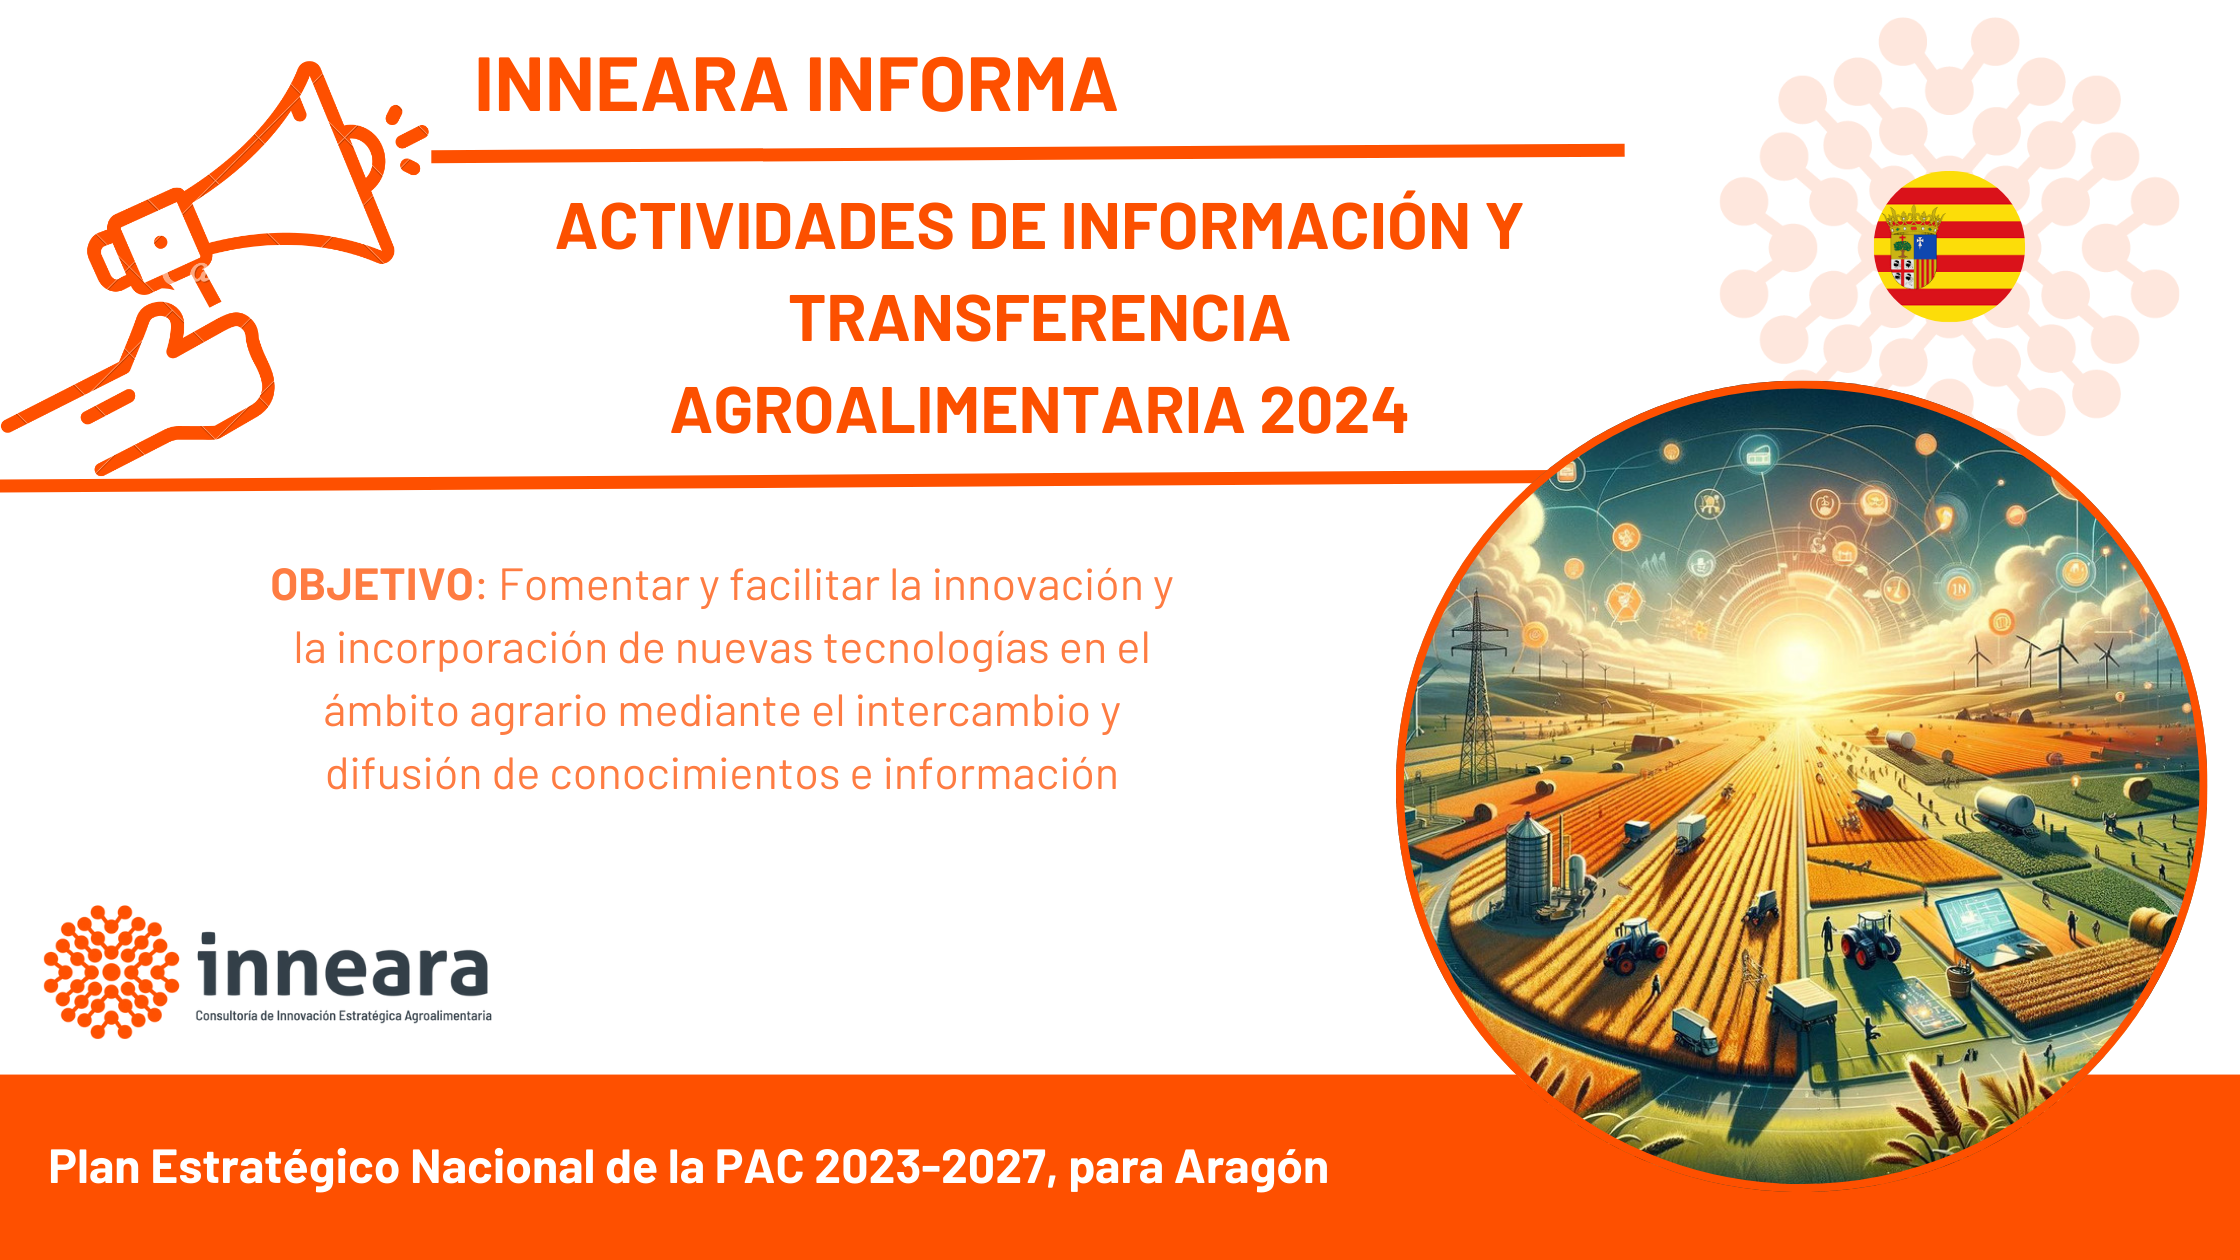 ACTIVIDADES DE INFORMACIÓN Y TRANSFERENCIA AGROALIMENTARIA 2024